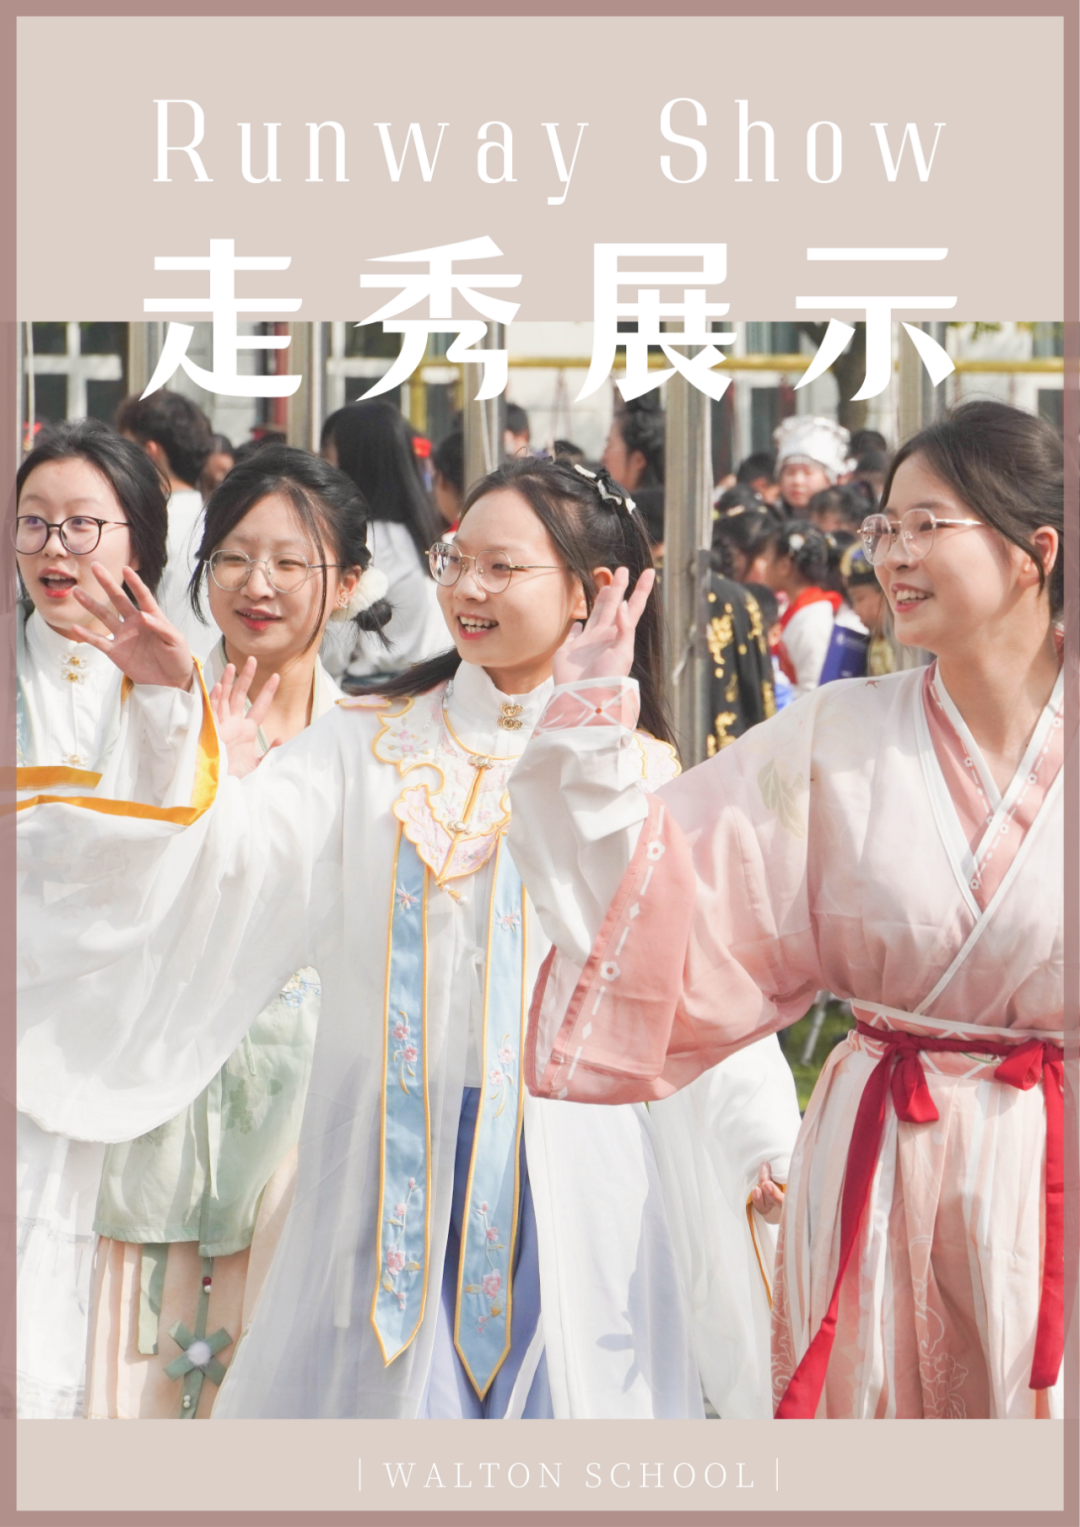 民族服饰日 | 103张图，感受中国文化自信，眼睛都挪不开了……